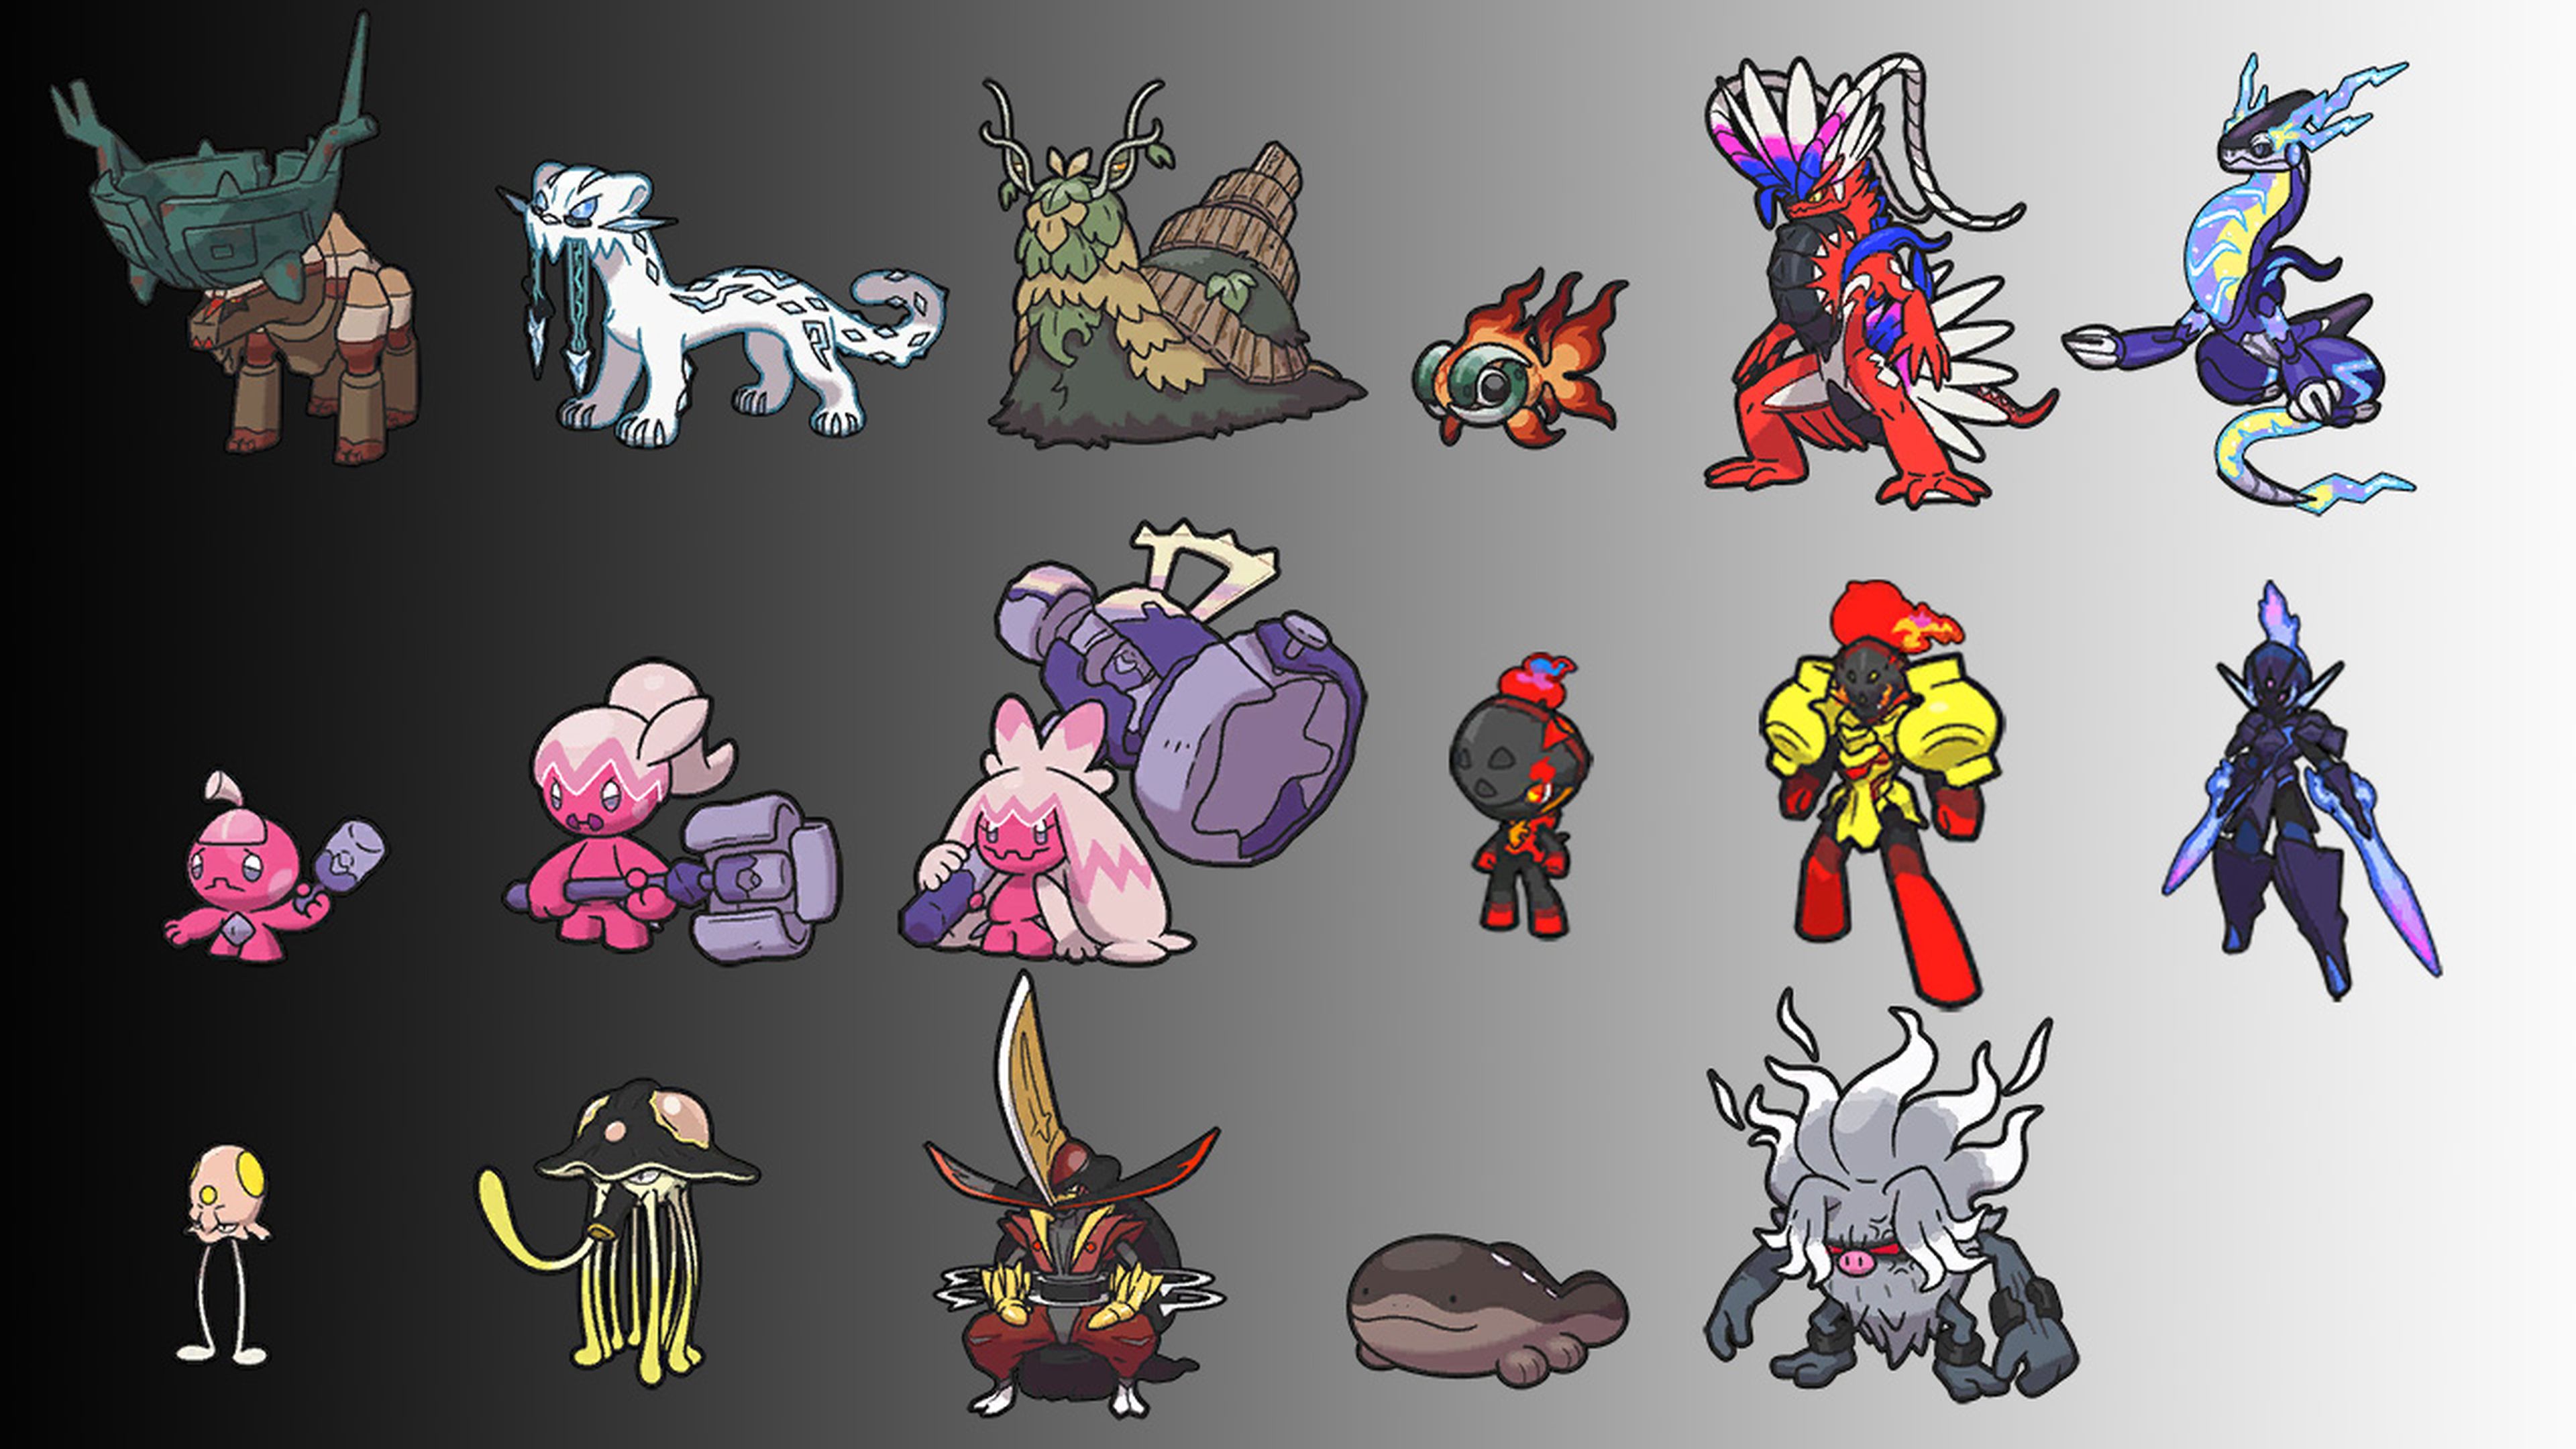 Pokédex de Paldea: TODOS los Pokémon en Escarlata y Púrpura y cómo